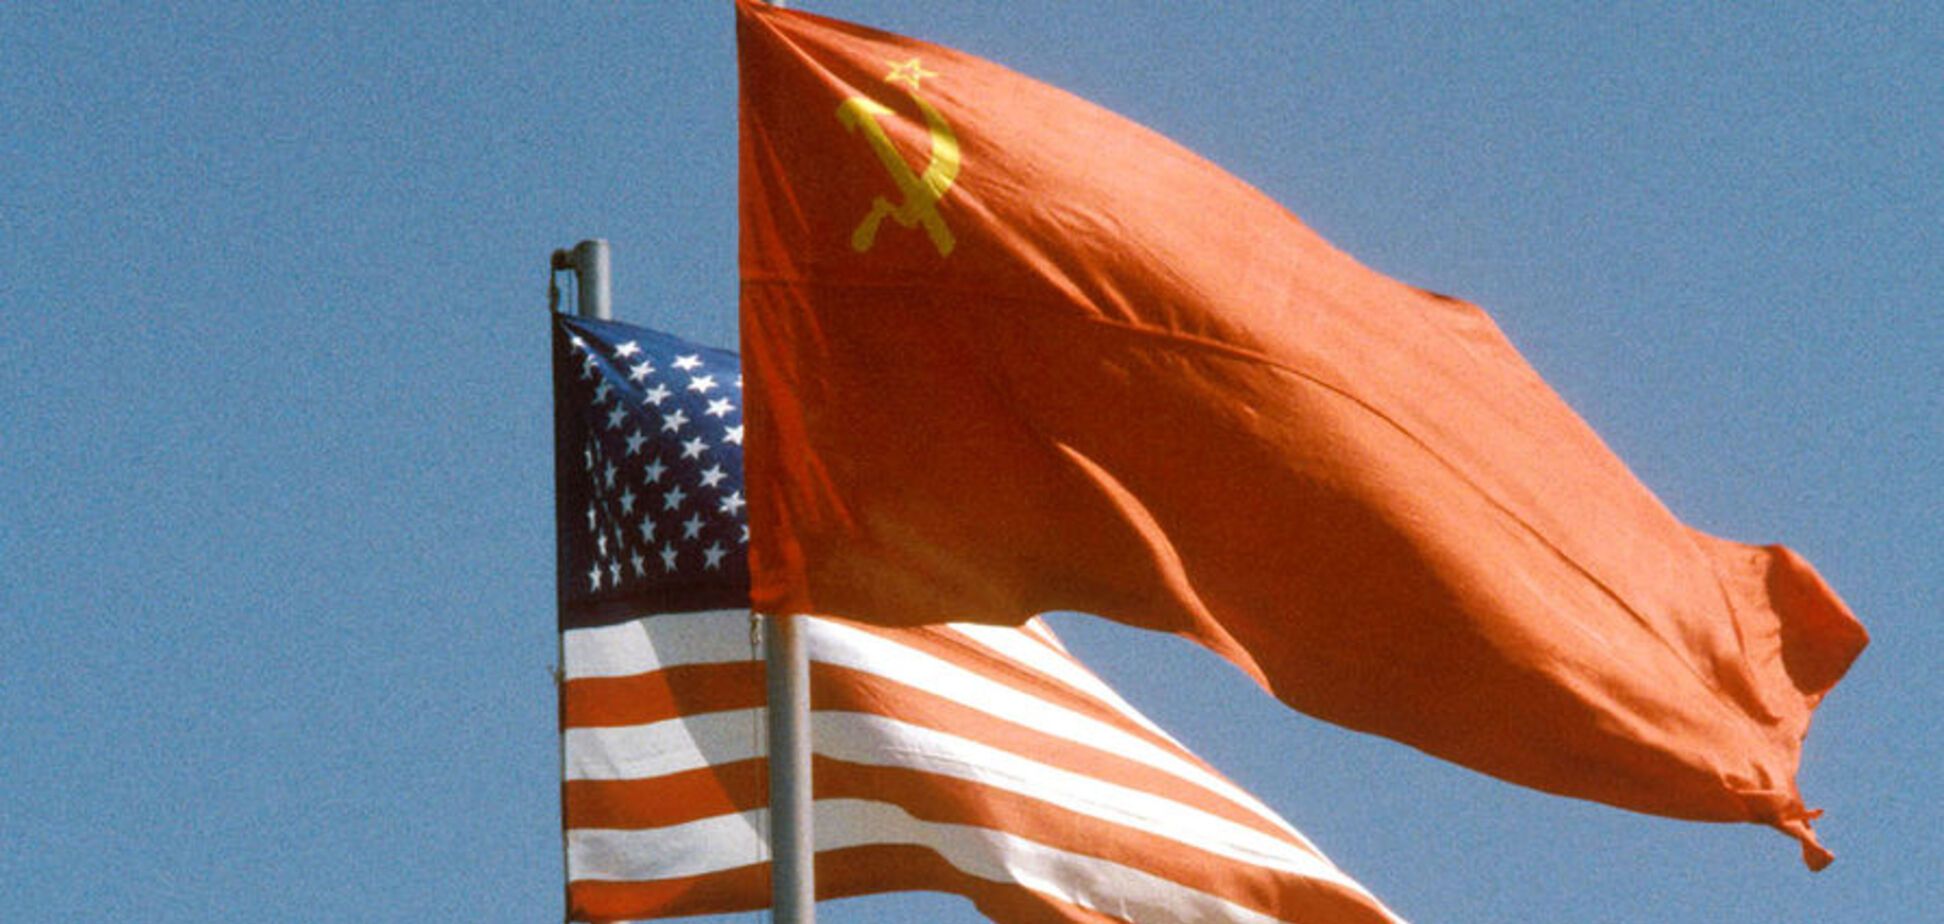 СССР не был равносильным противником Запада: раскрылся серьезный нюанс 'холодной войны'